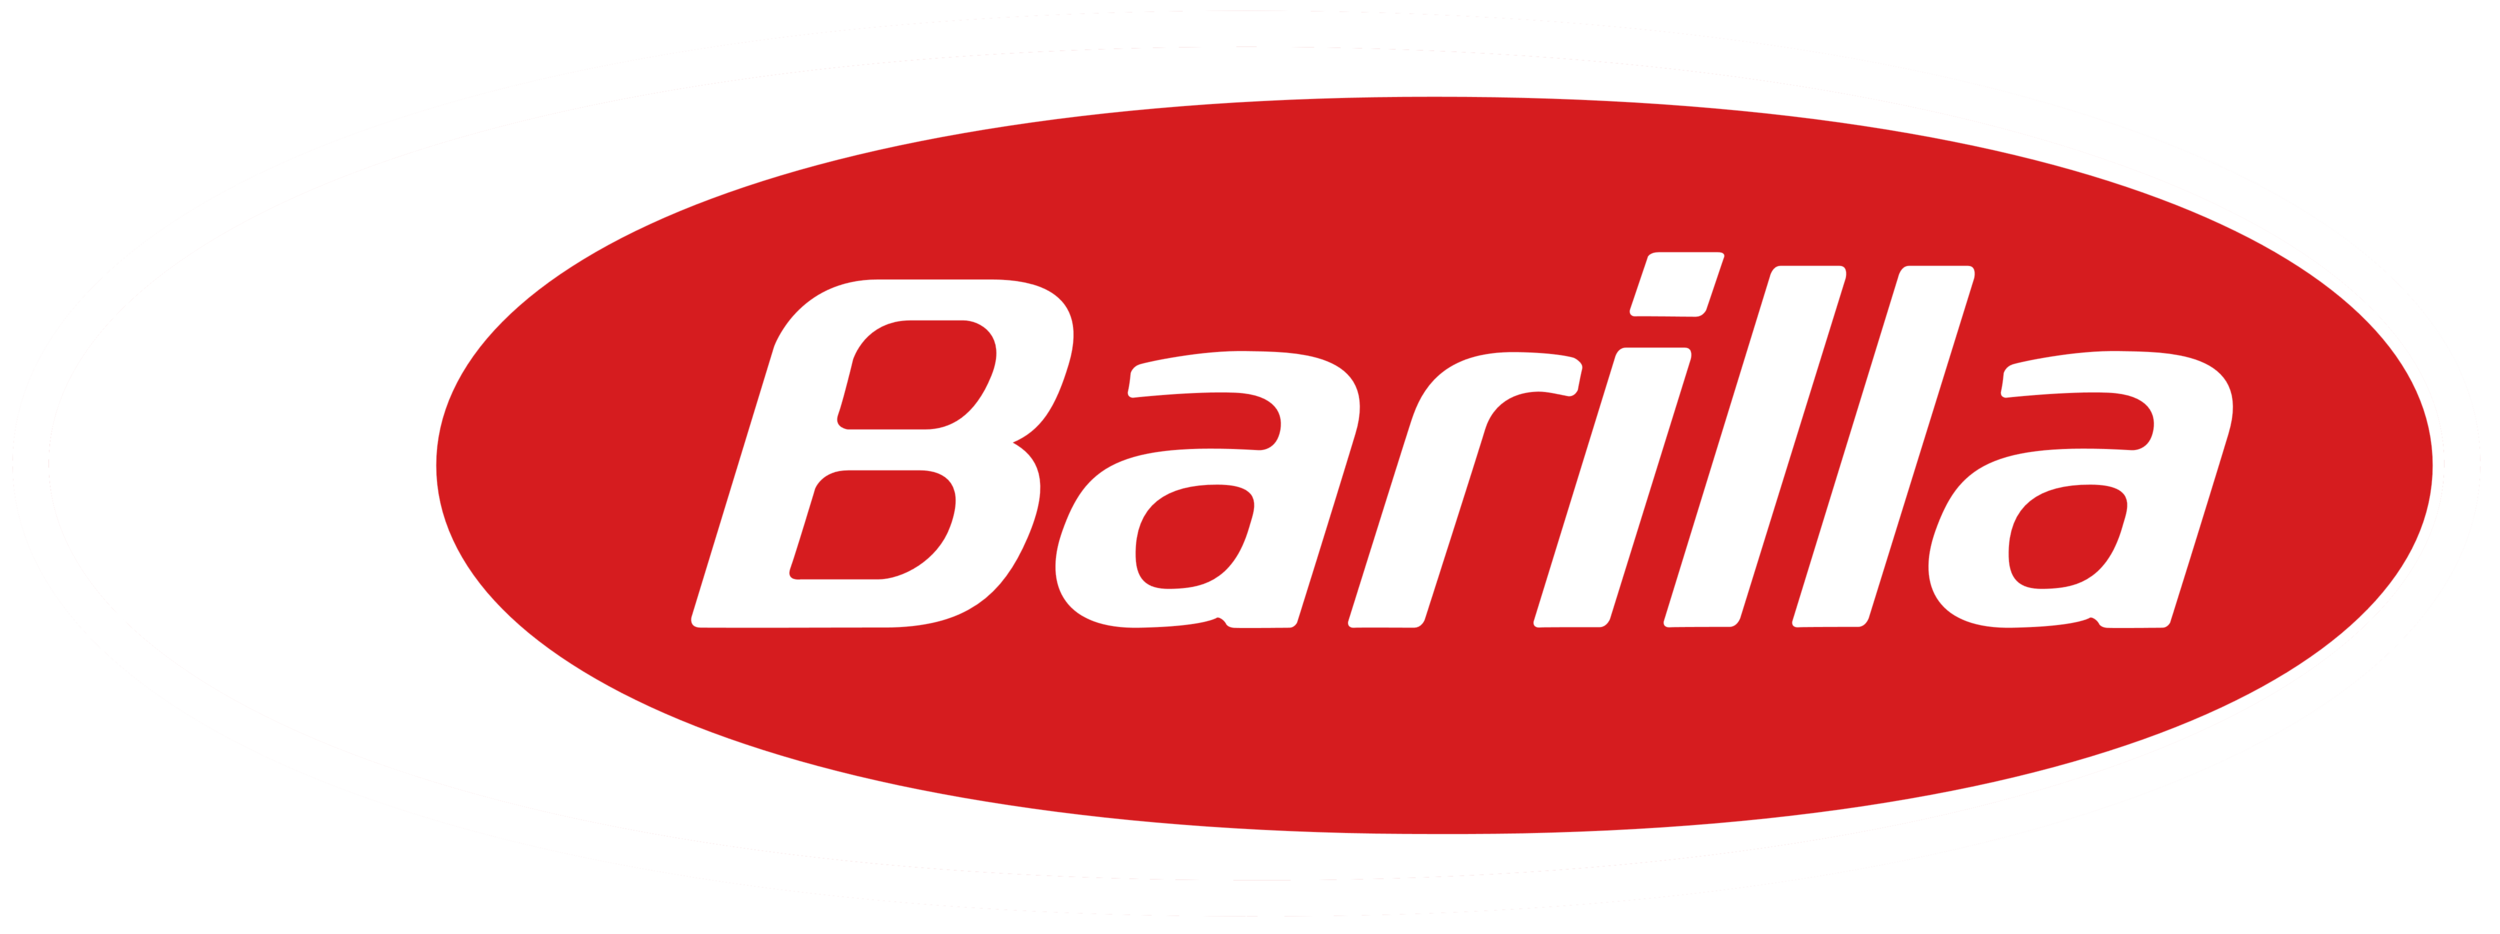 Barilla_logo.png